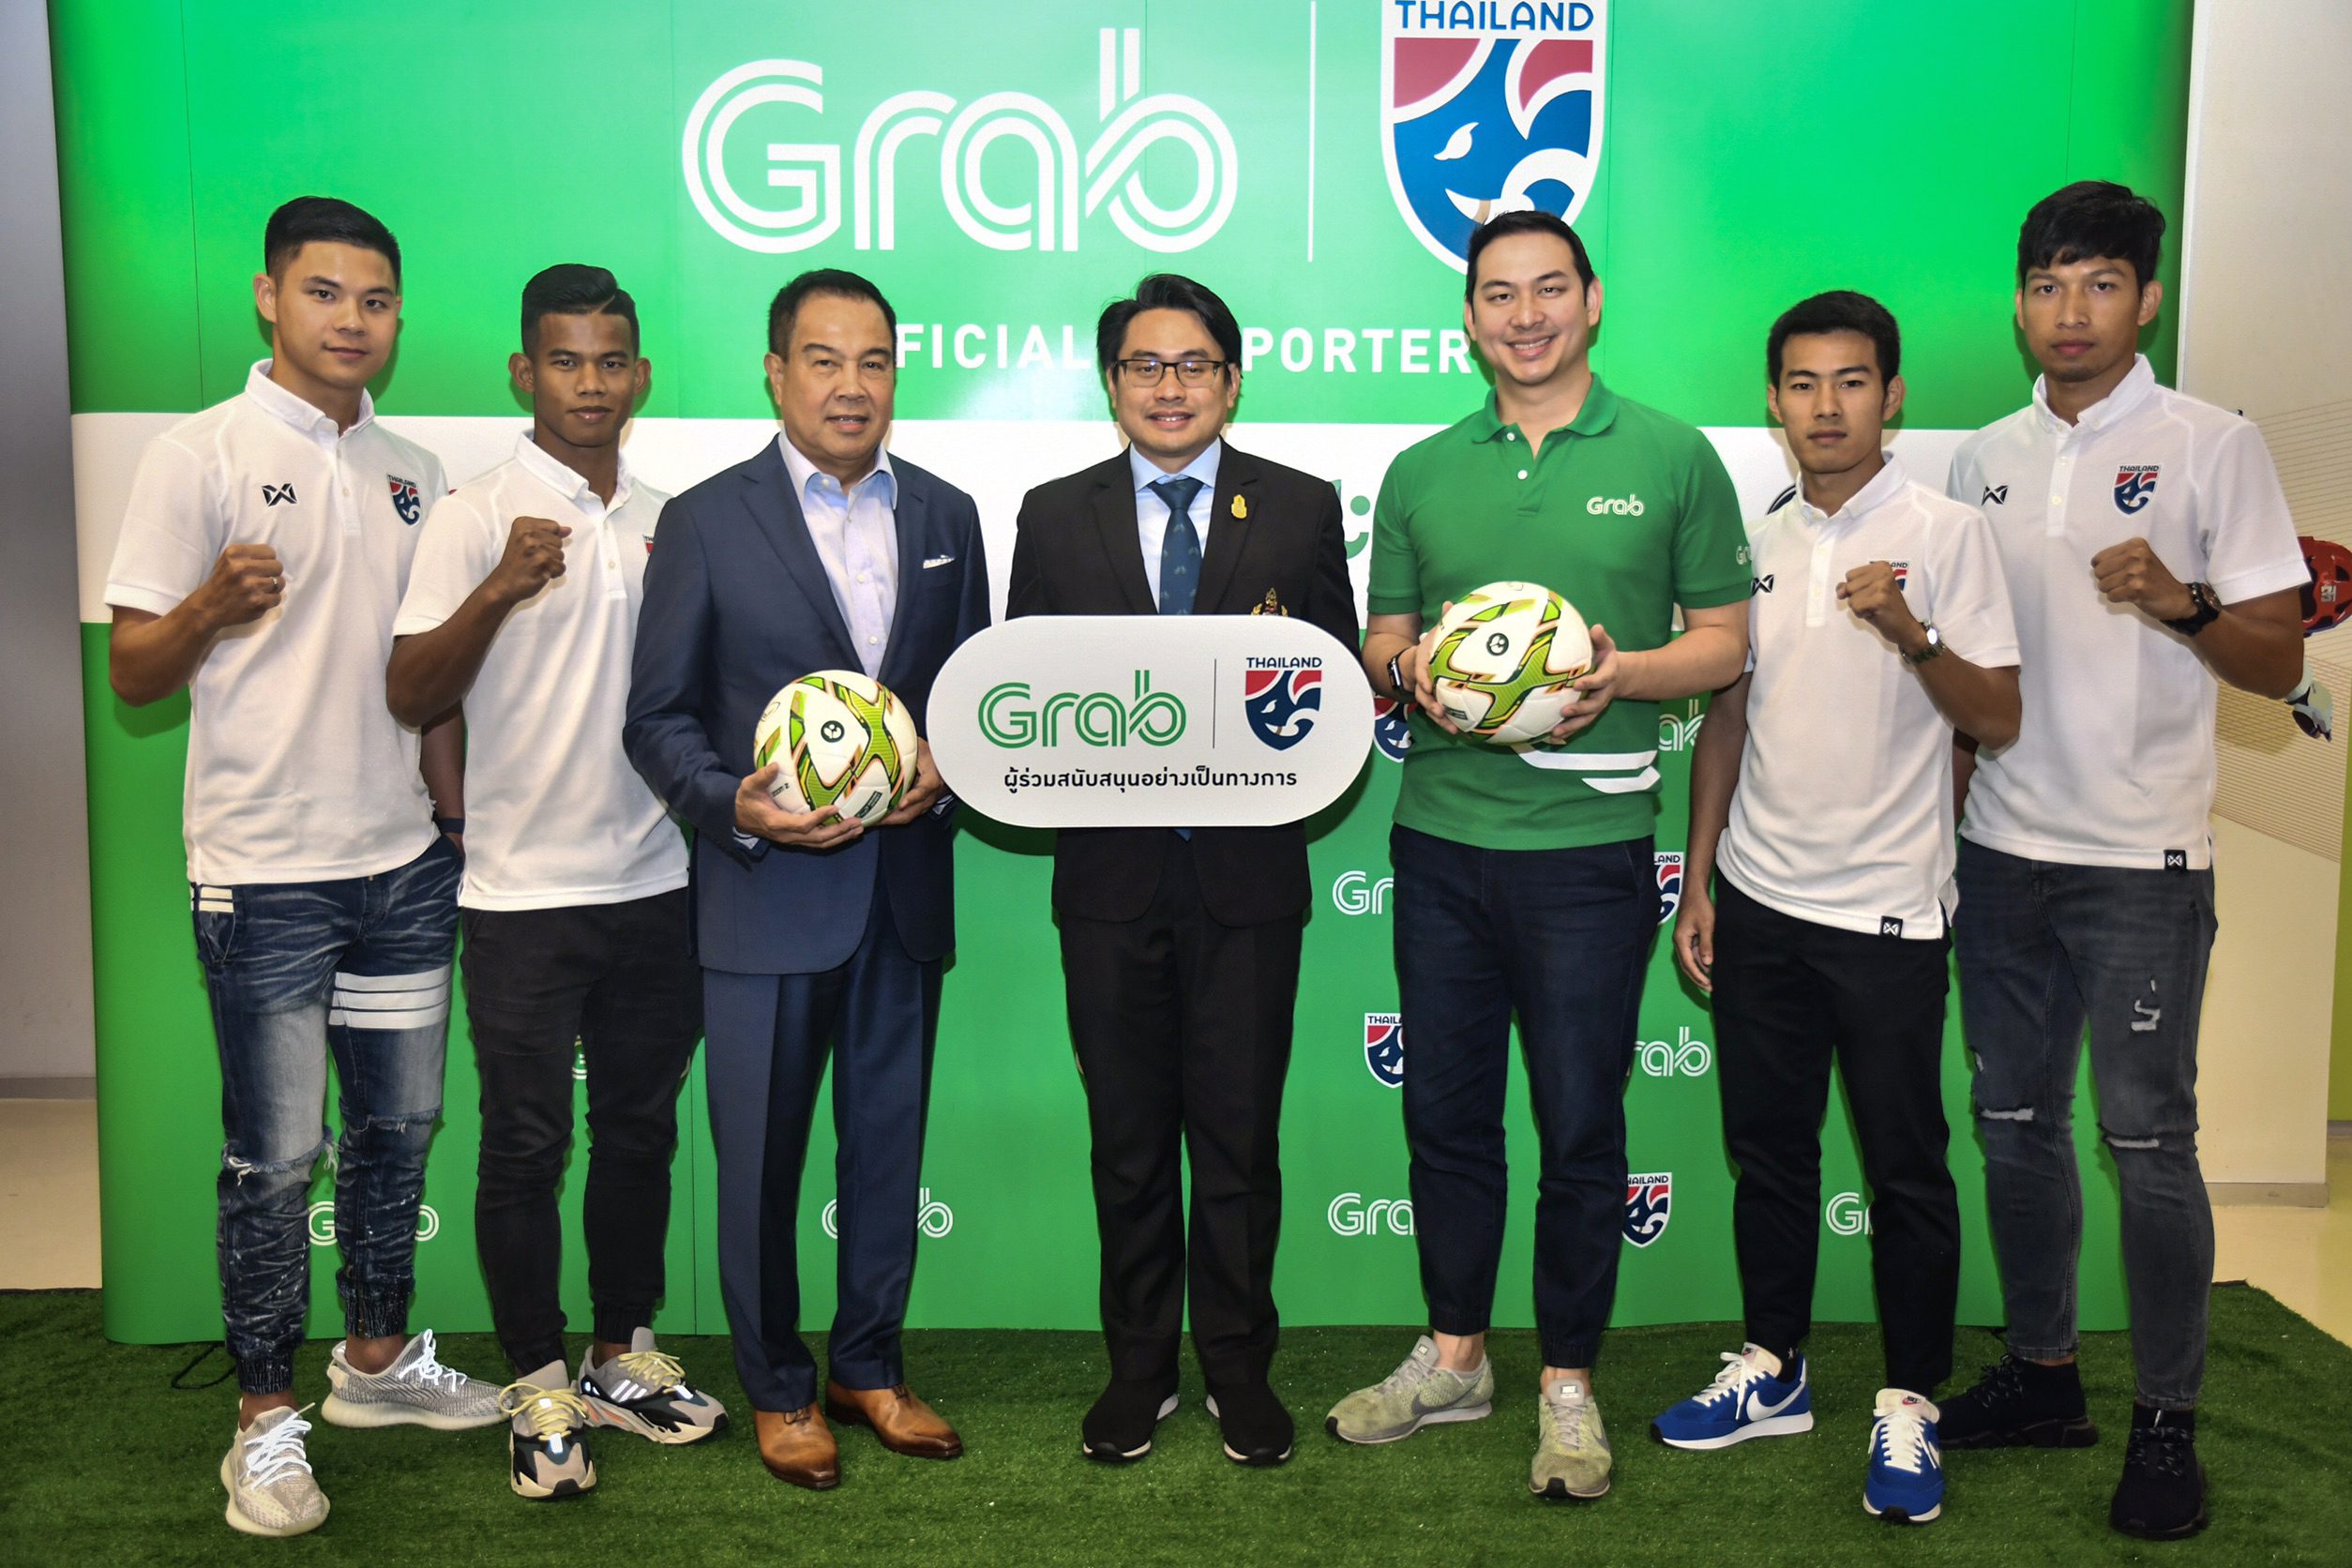 เชียร์ไทยไปกับแกร็บ! ส.บอลเปิดตัว ‘แกร็บ’ ผู้สนับสนุนฟุตบอลทีมชาติไทย